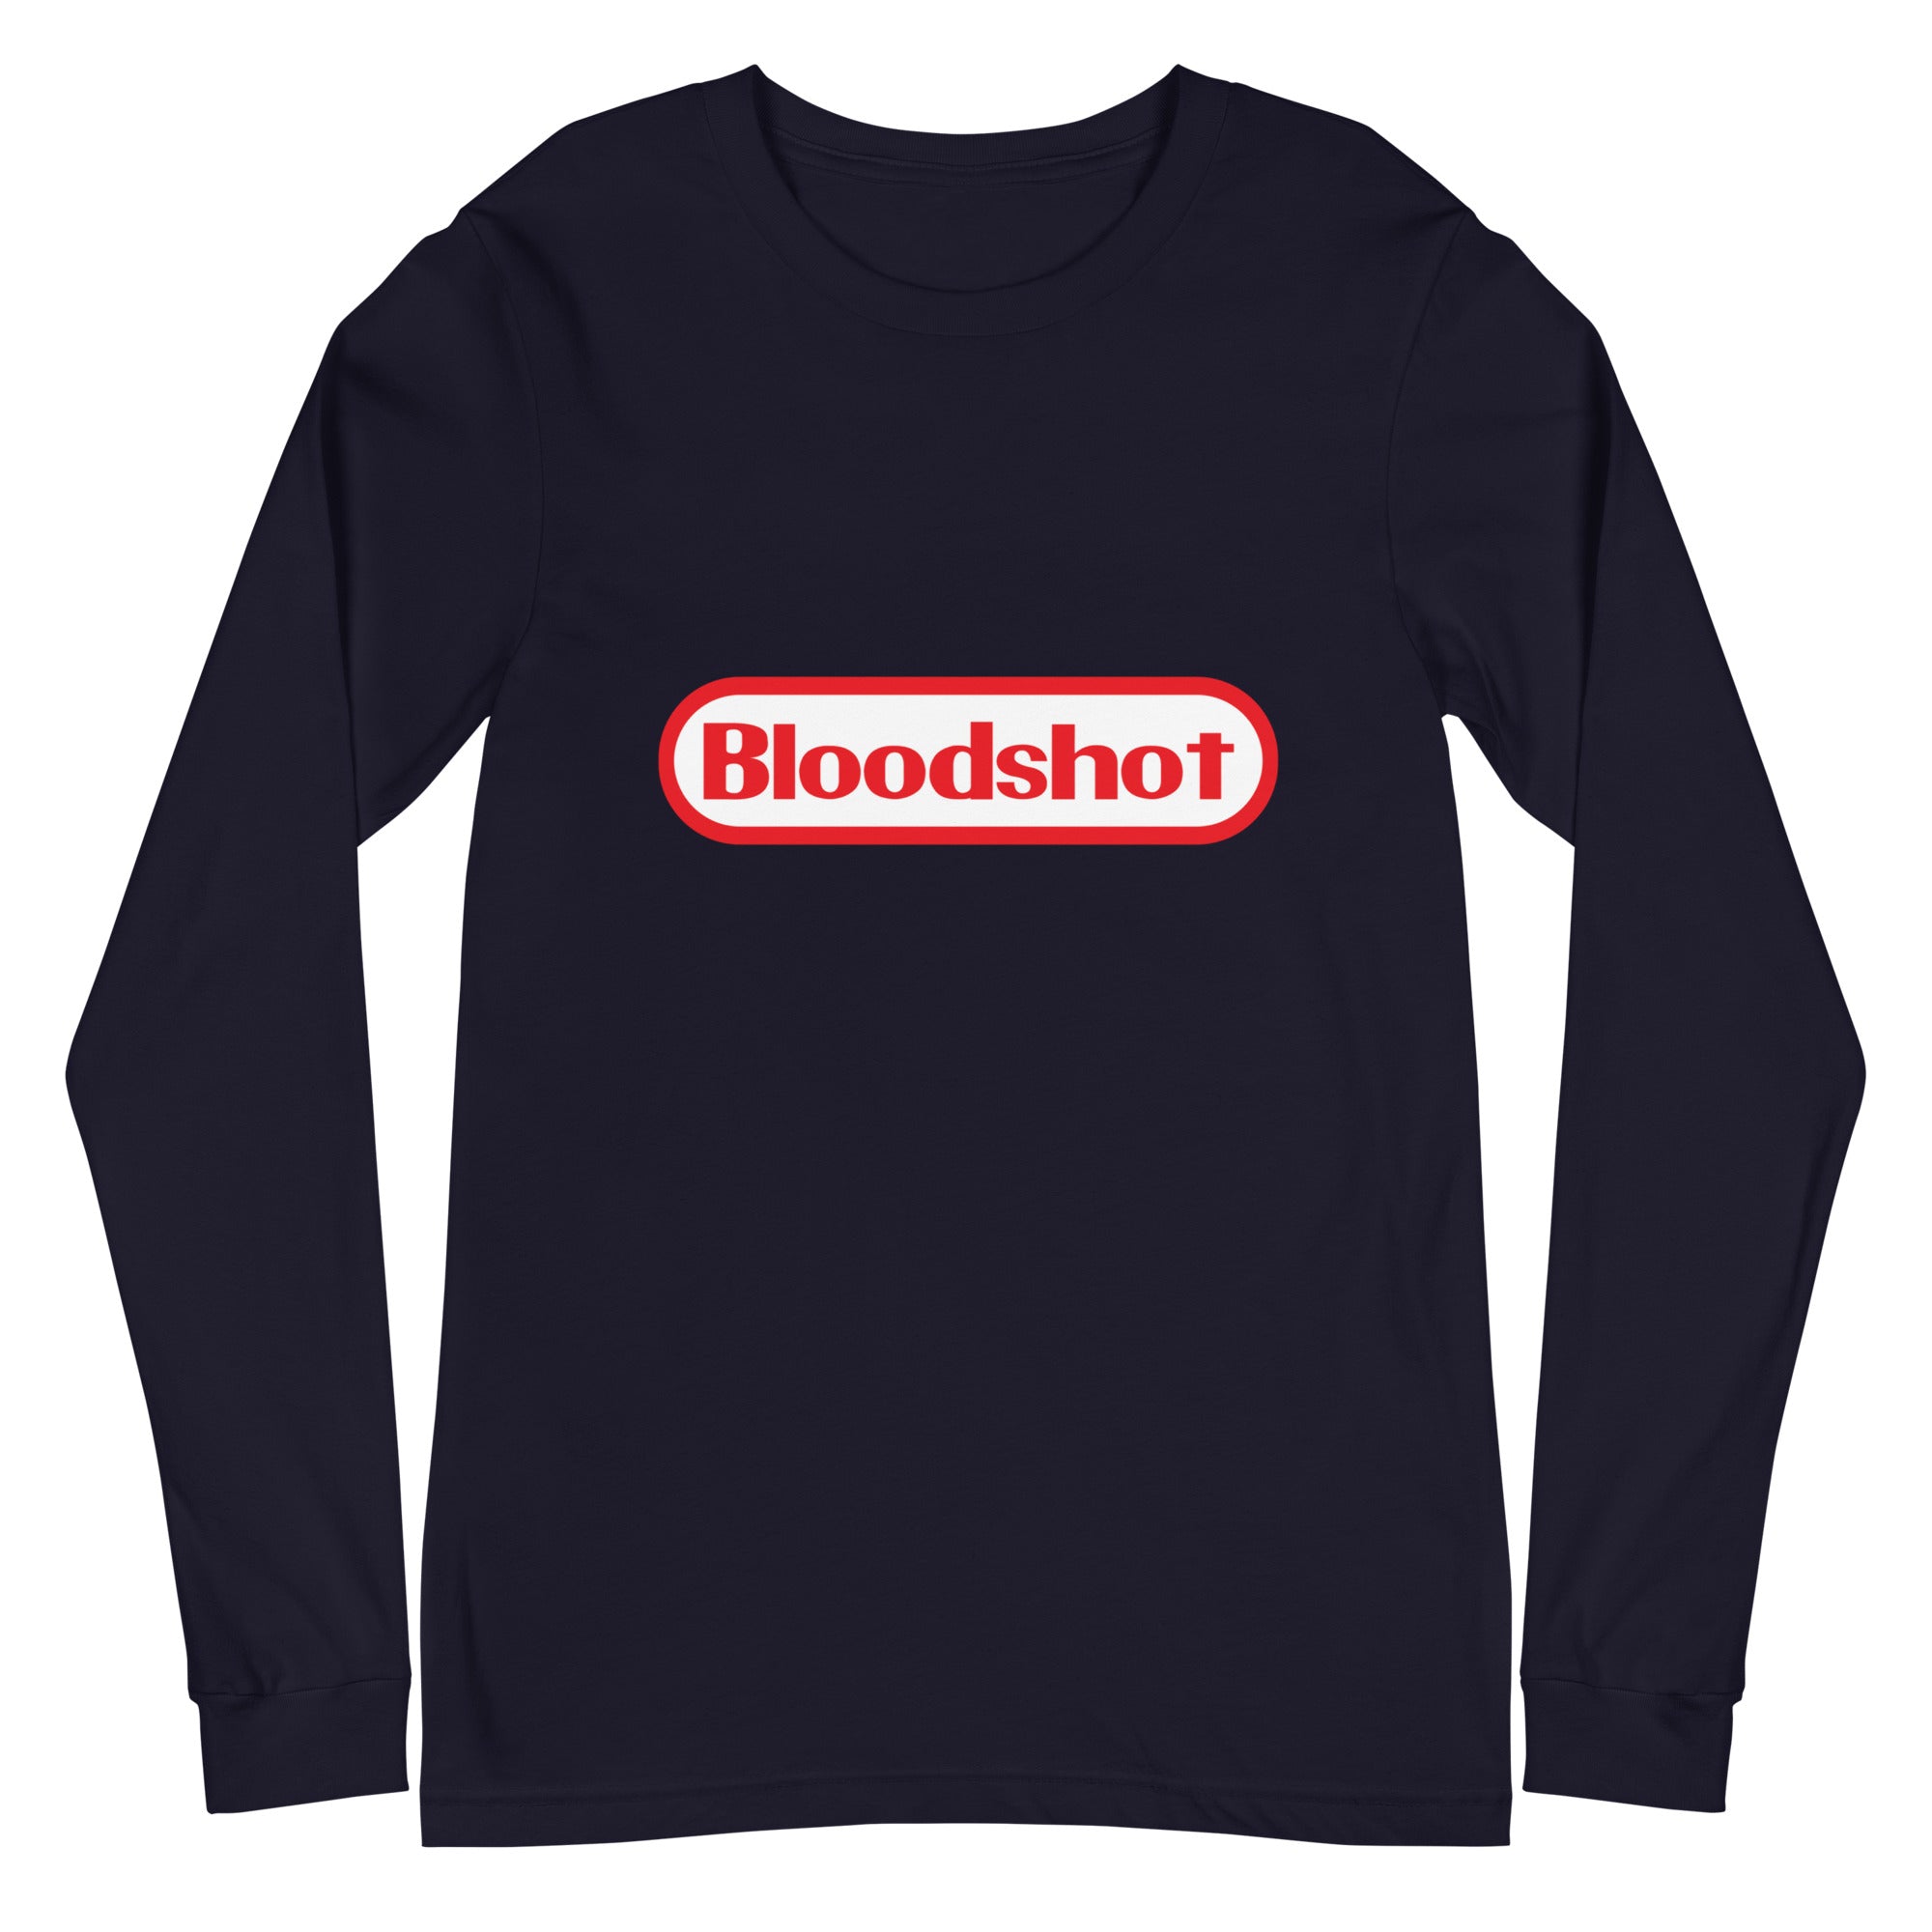 Bloodshot - Unisex Long Sleeve Tee